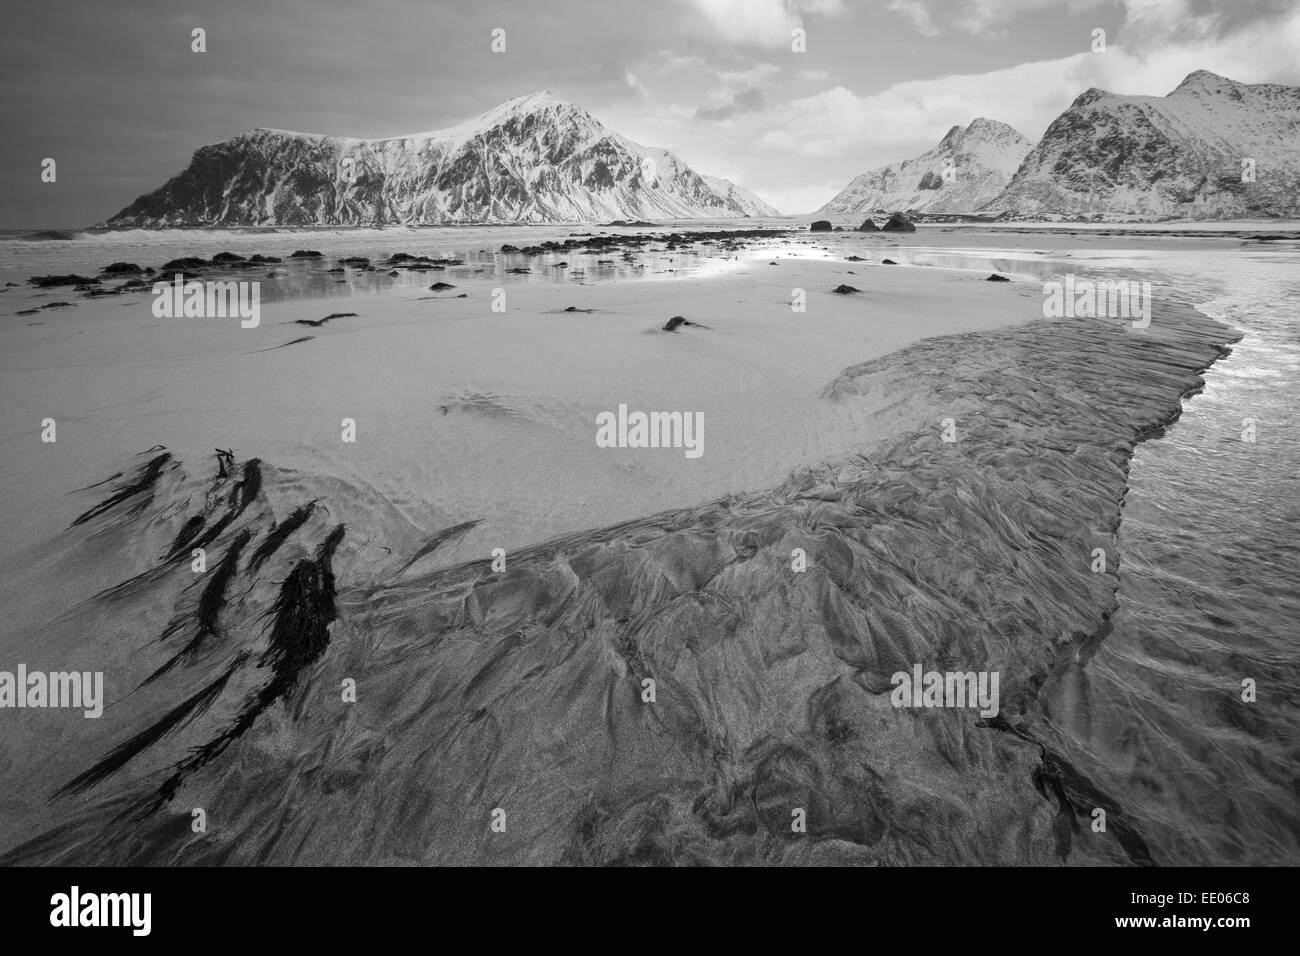 Spiaggia sabbiosa a Flakstad, Isole Lofoten, arctic Norvegia con alghe marine in primo piano, montagne innevate sullo sfondo. Monocromatico. Foto Stock